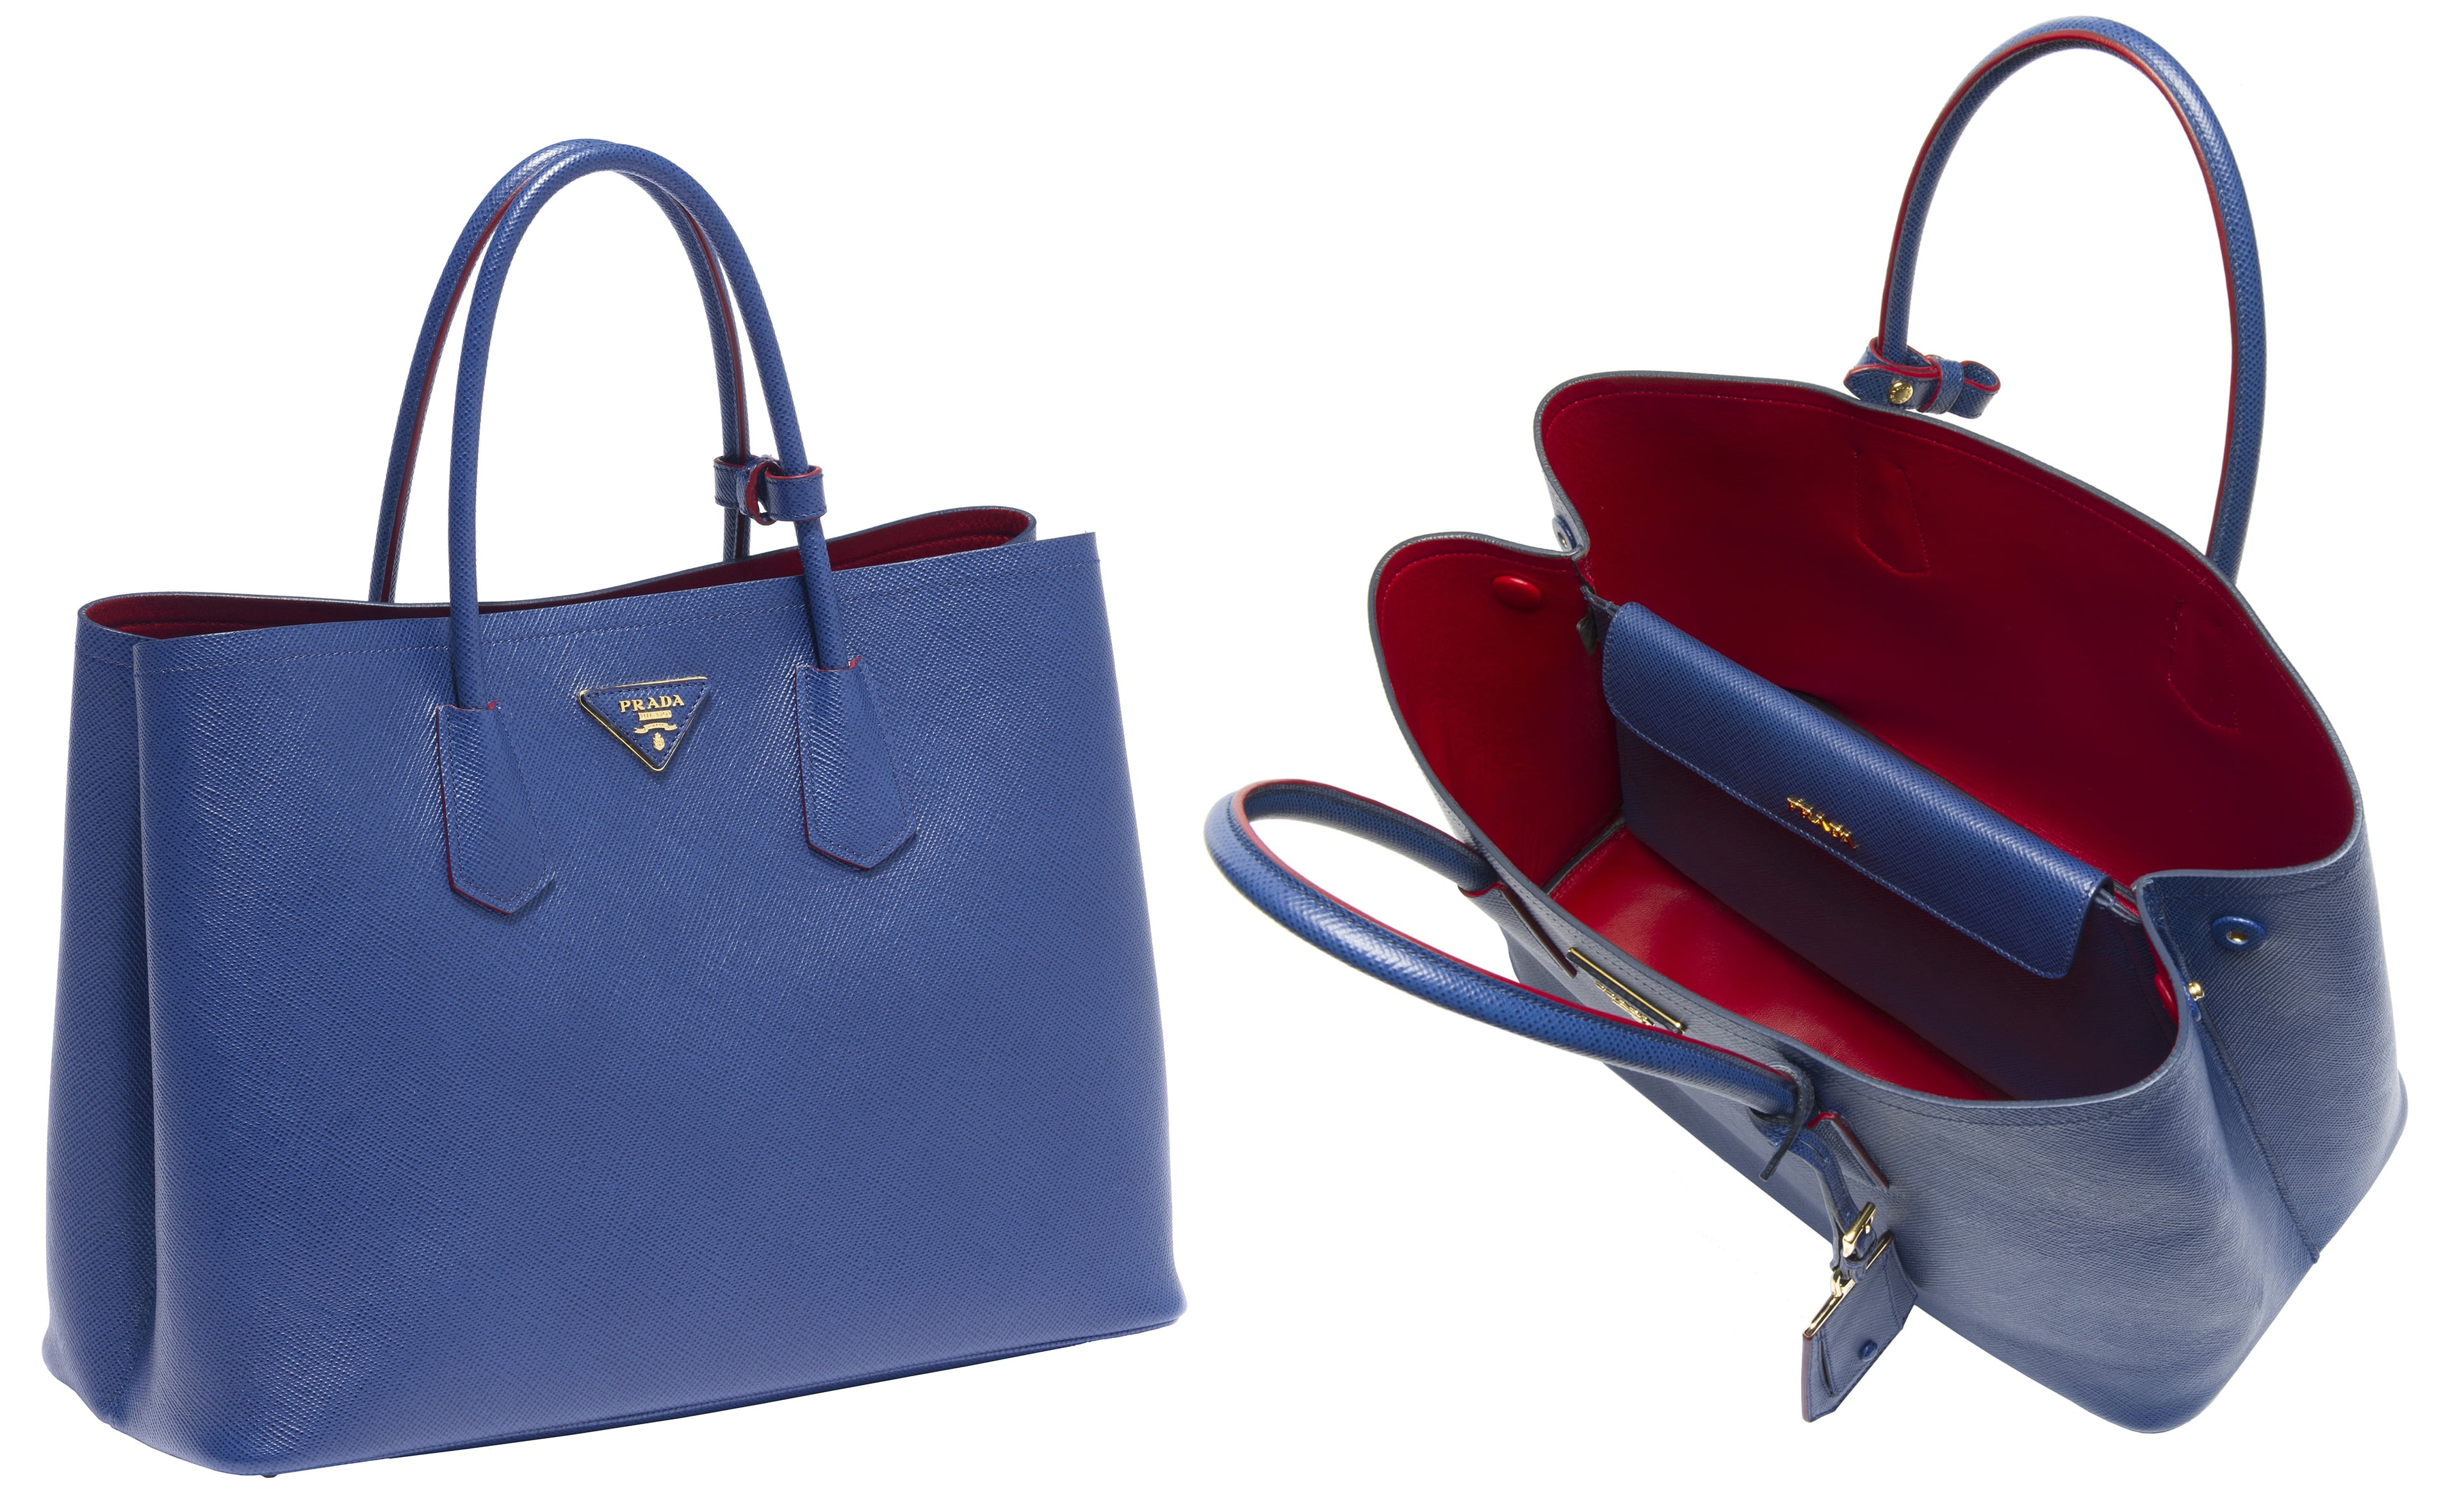 Prada Saffiano Lux Tote / Handbag Review 